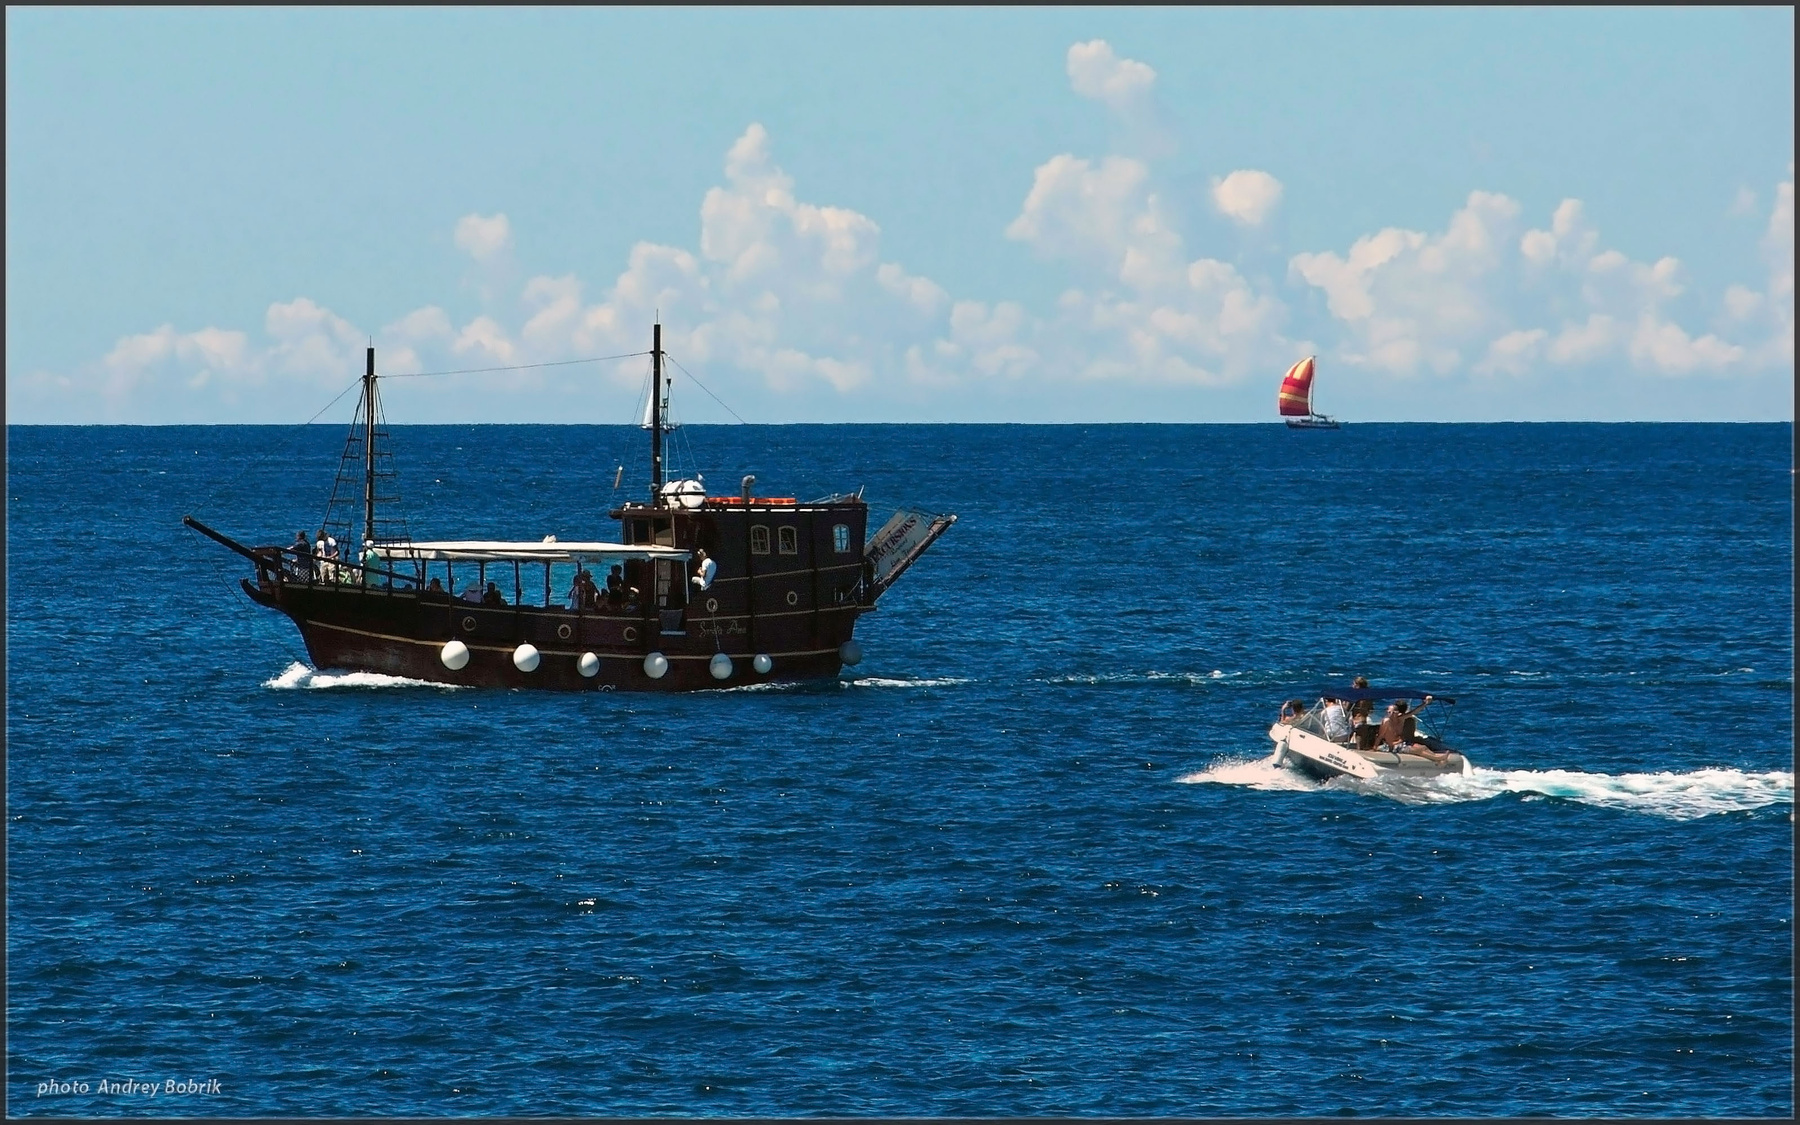 Отдых на воде Хорватия Ровинь море корабль шхуна катер парус яхта горизонт